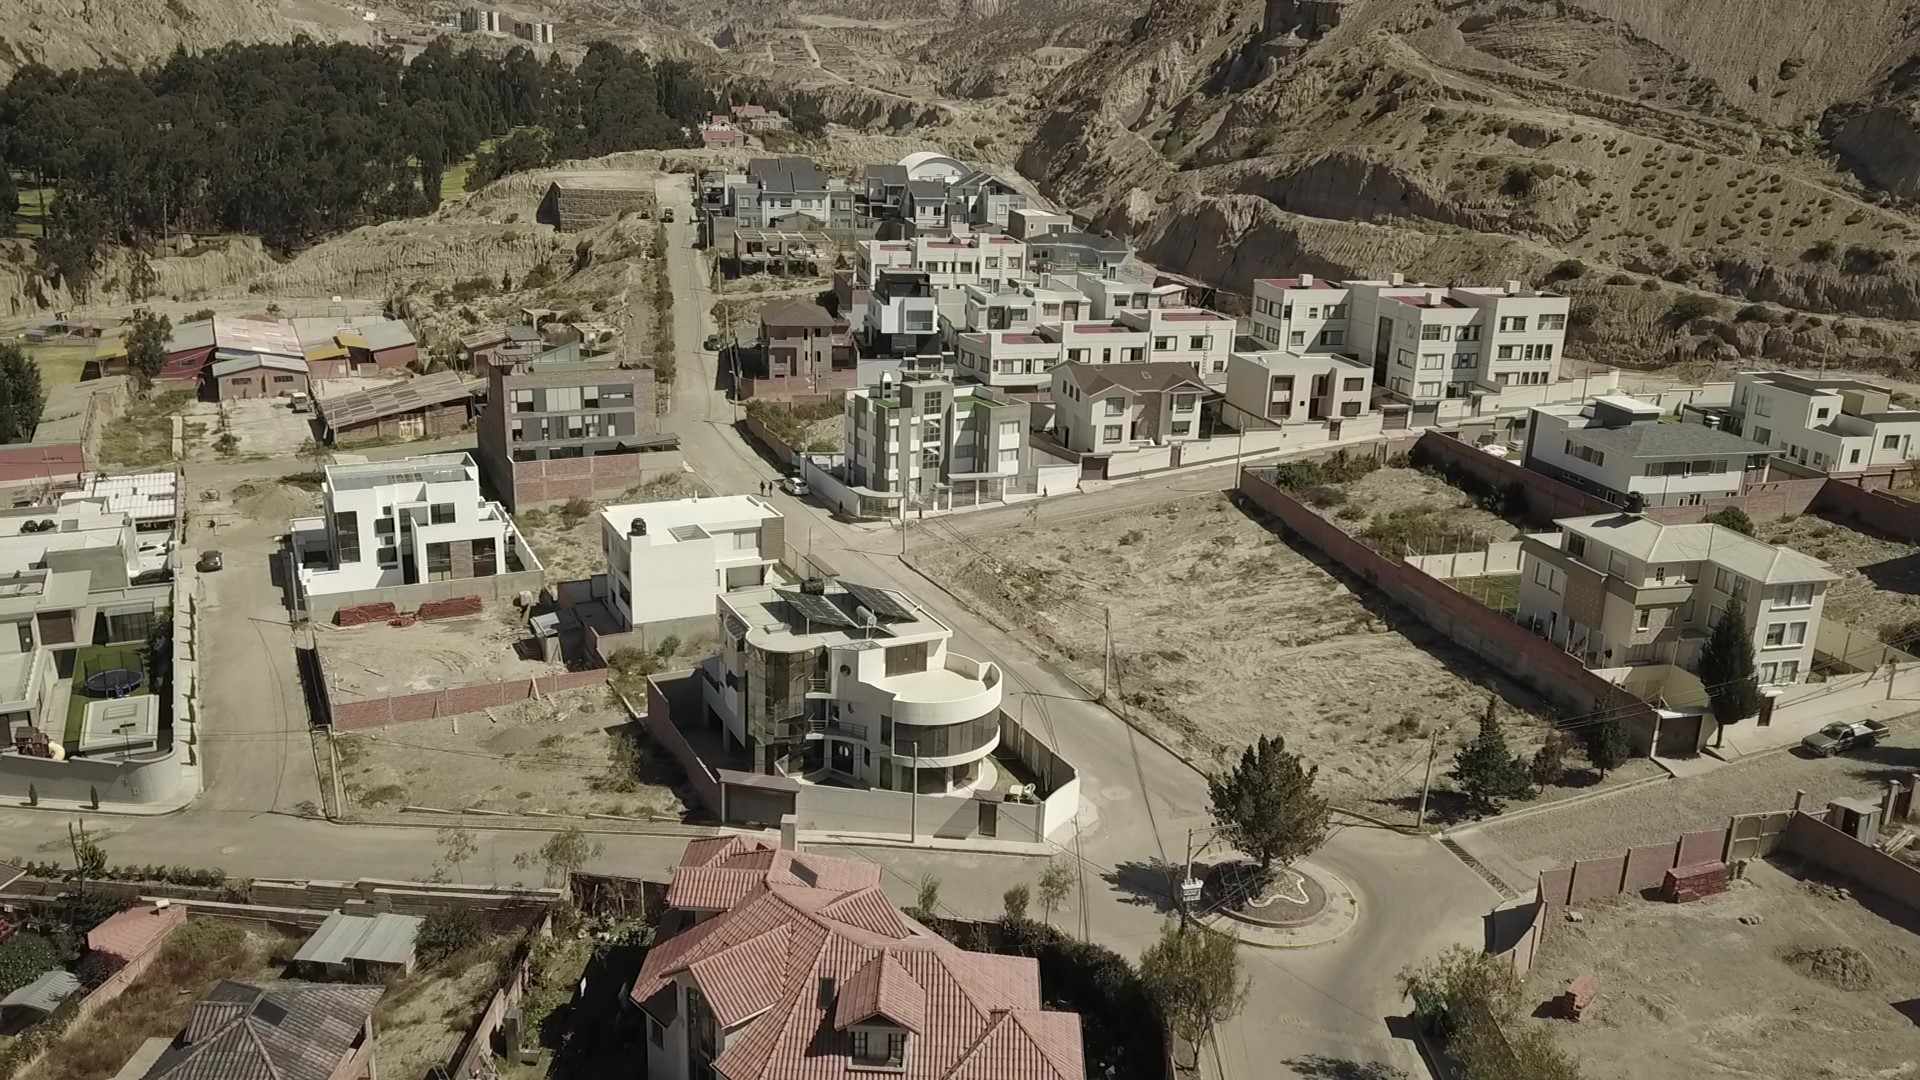 Terreno en Mallasilla en La Paz    Foto 2